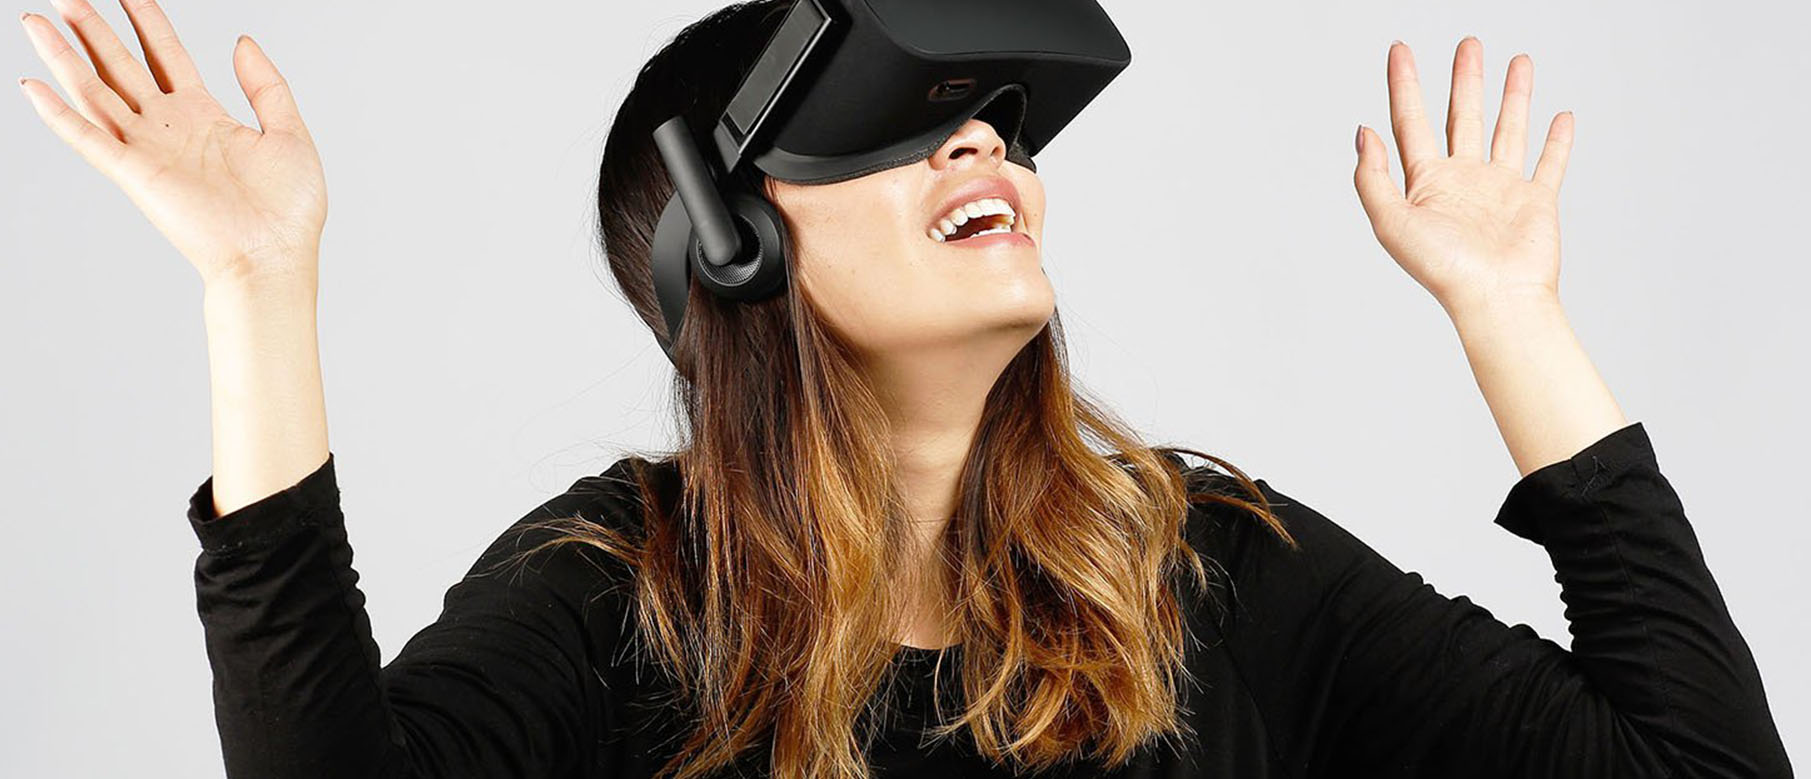 Изображение к Продажи Oculus невелики, но  Facebook смотрит с оптимизмом в будущее